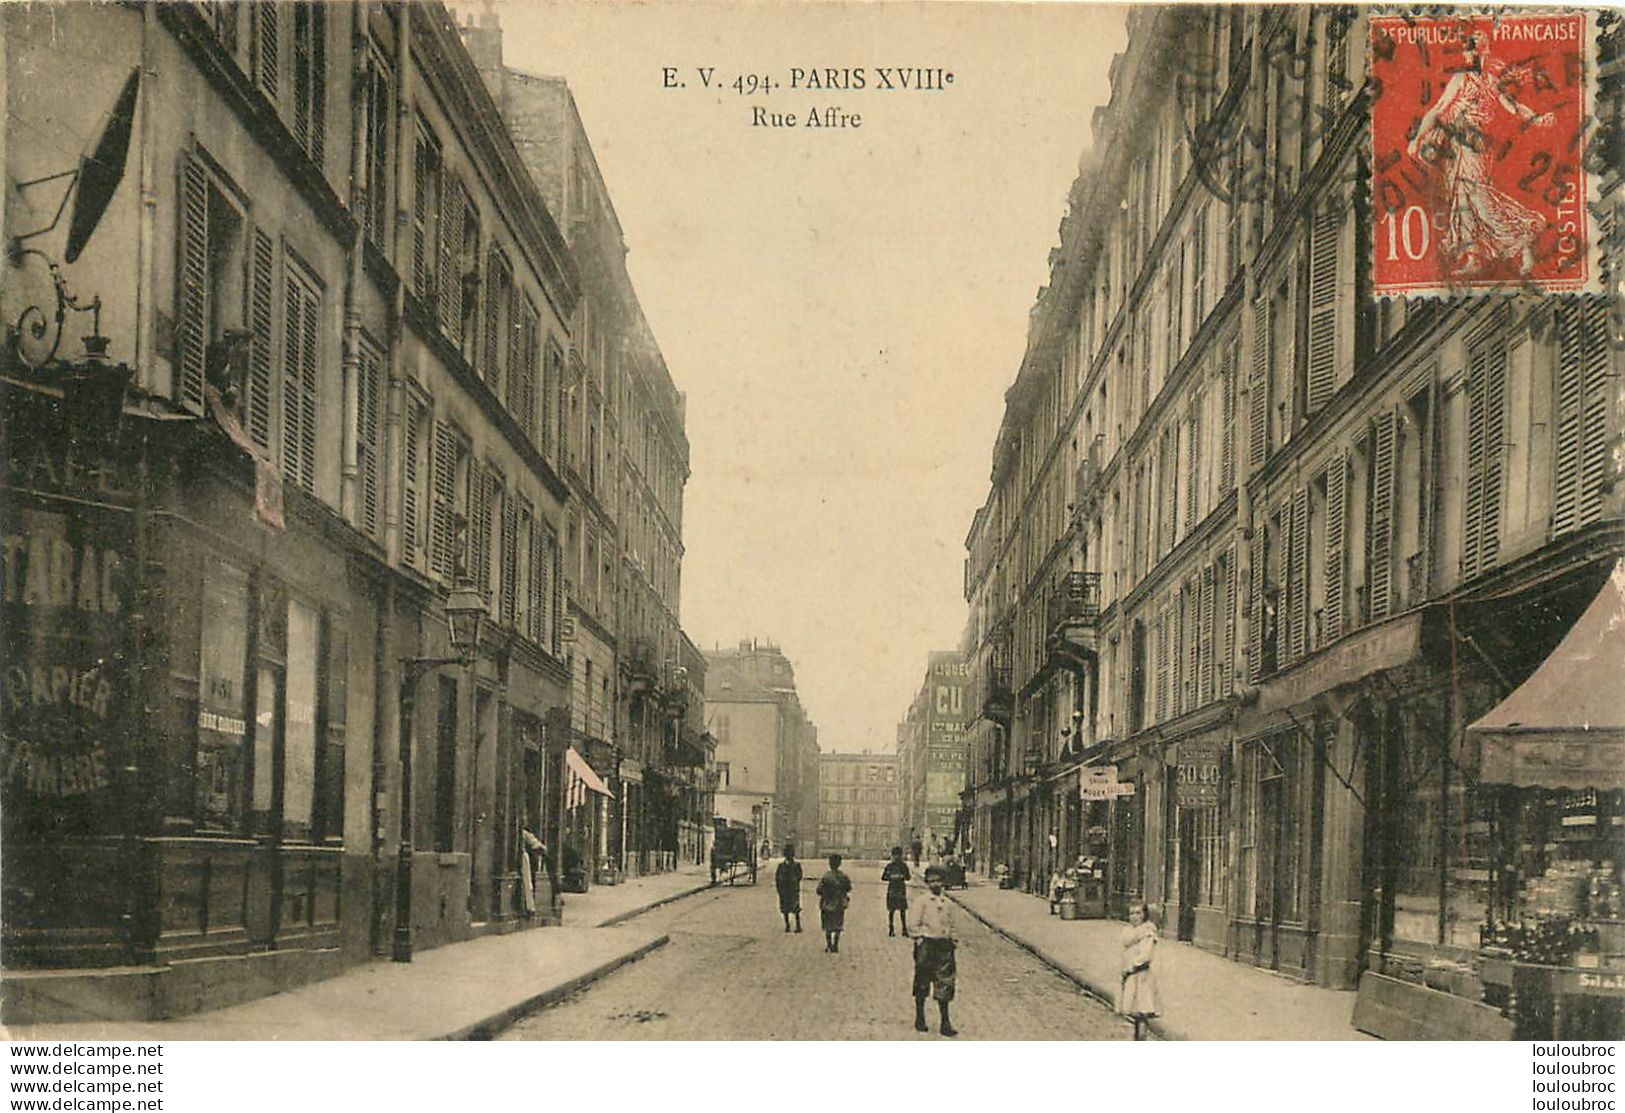 PARIS XVIIIe RUE AFFRE - Paris (18)